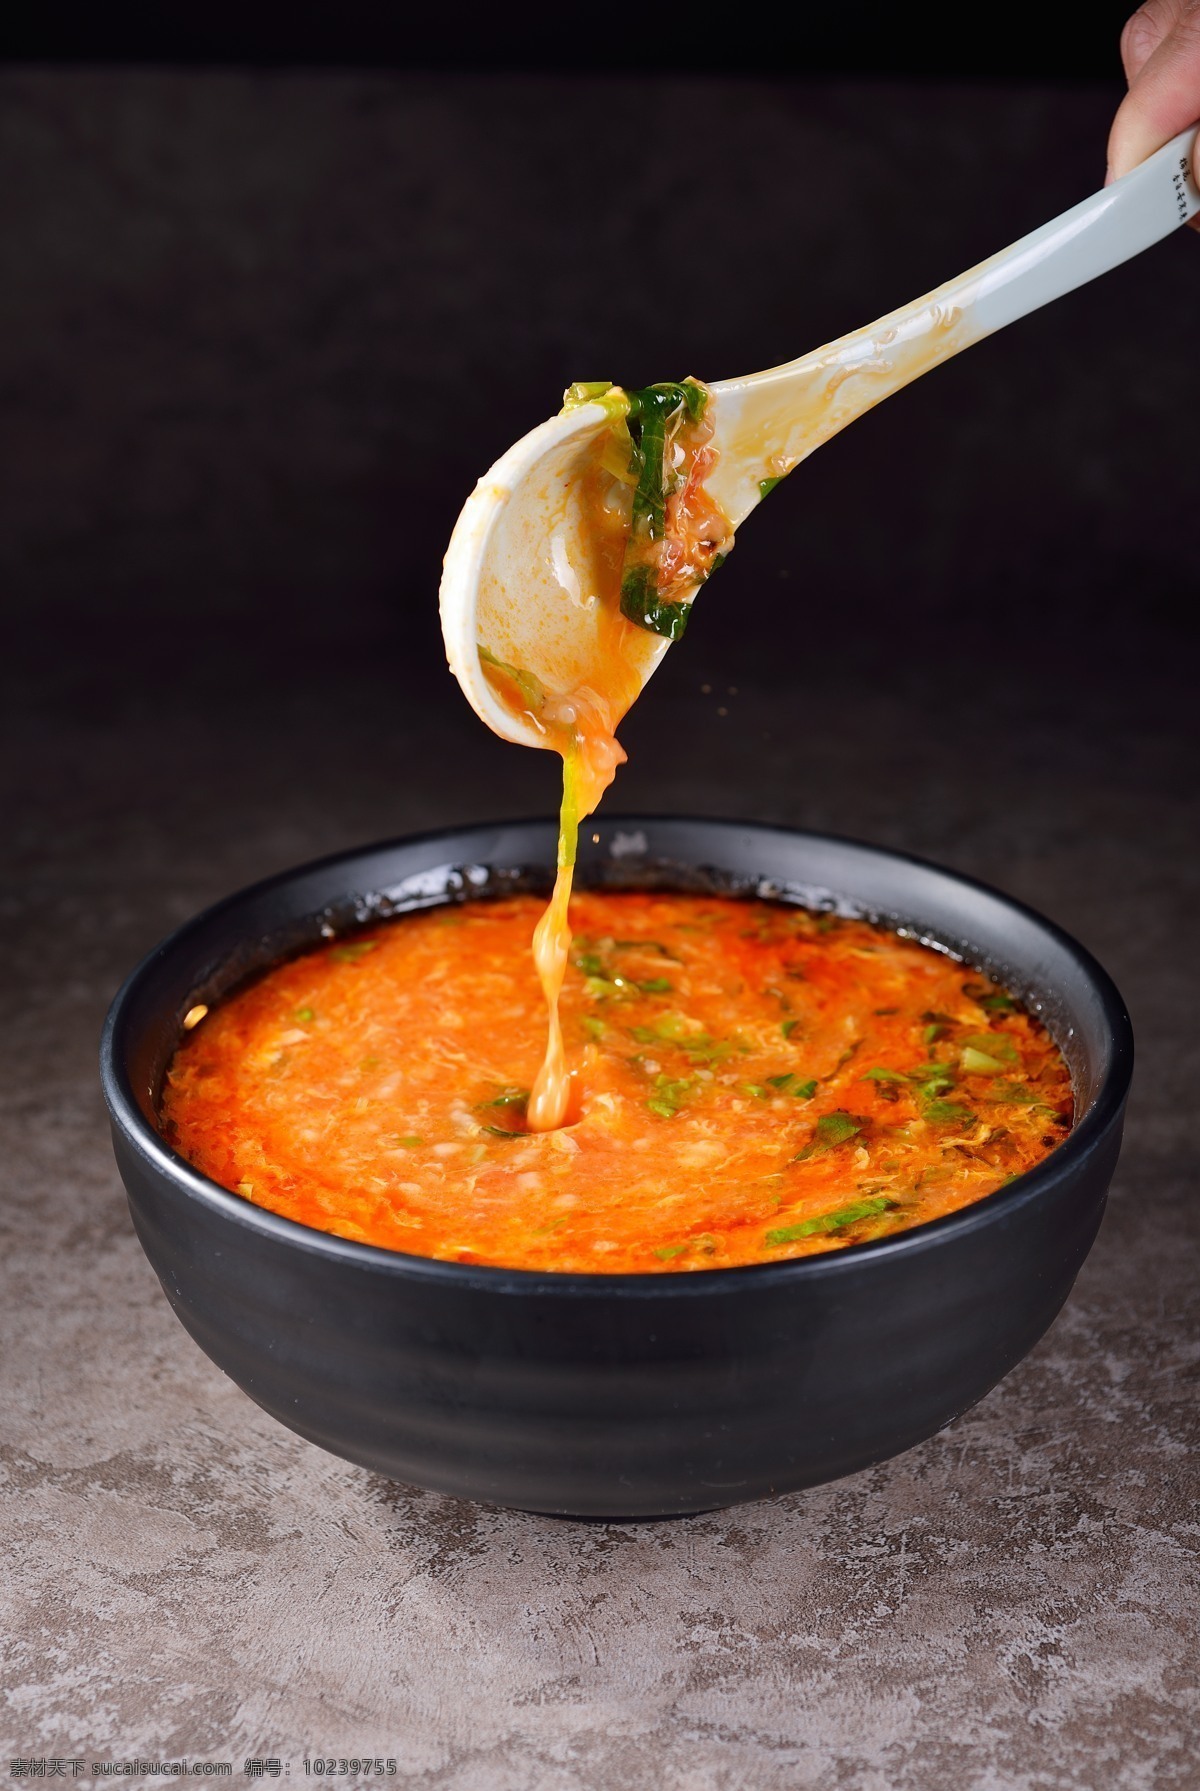 茄汁面疙瘩汤 茄汁 番茄汁 番茄 疙瘩 面疙瘩 疙瘩汤 面食 酸 开胃 美味 中式美食 餐饮美食 传统美食